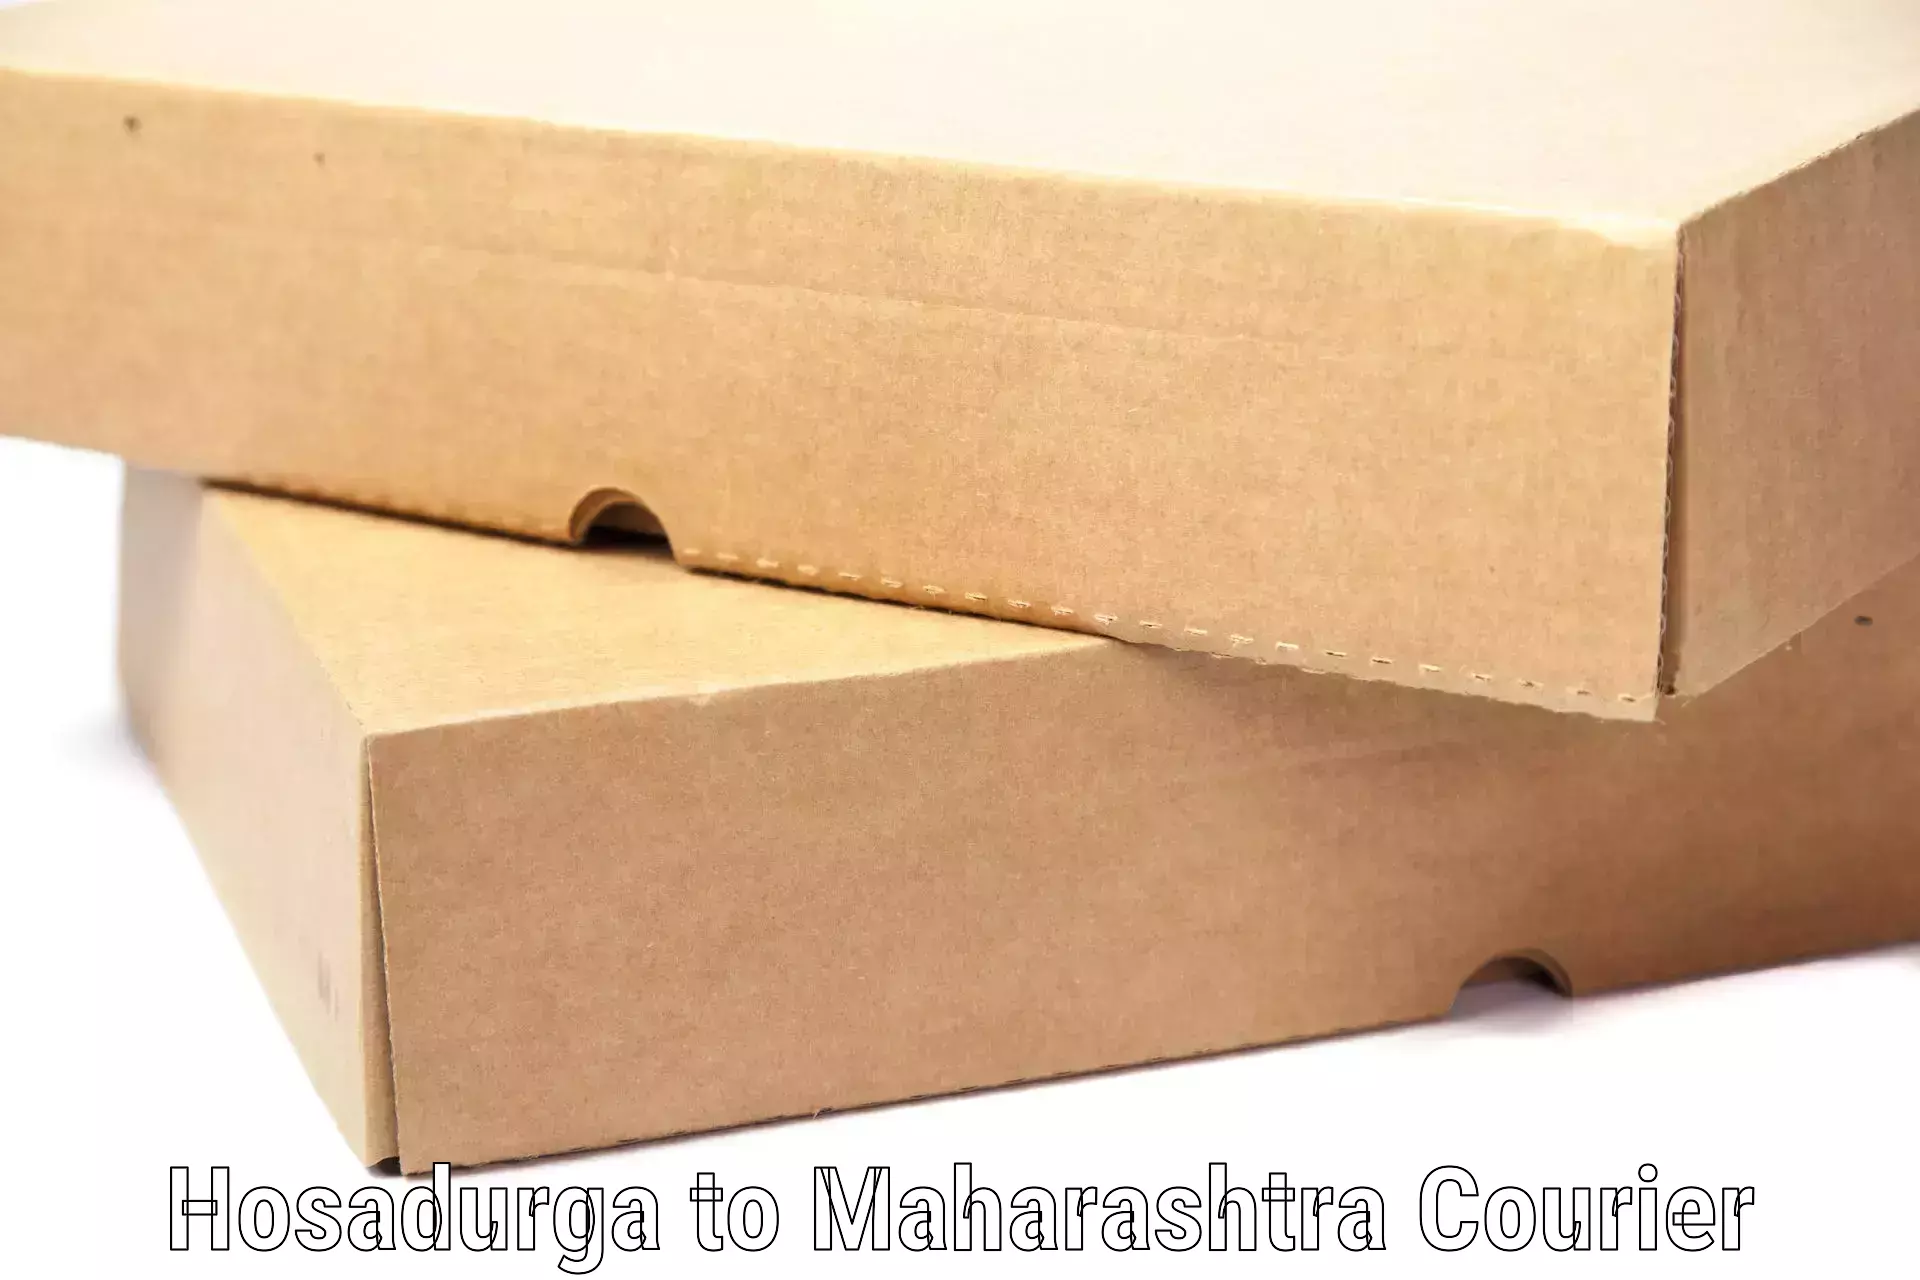 Hassle-free luggage shipping Hosadurga to Maharashtra